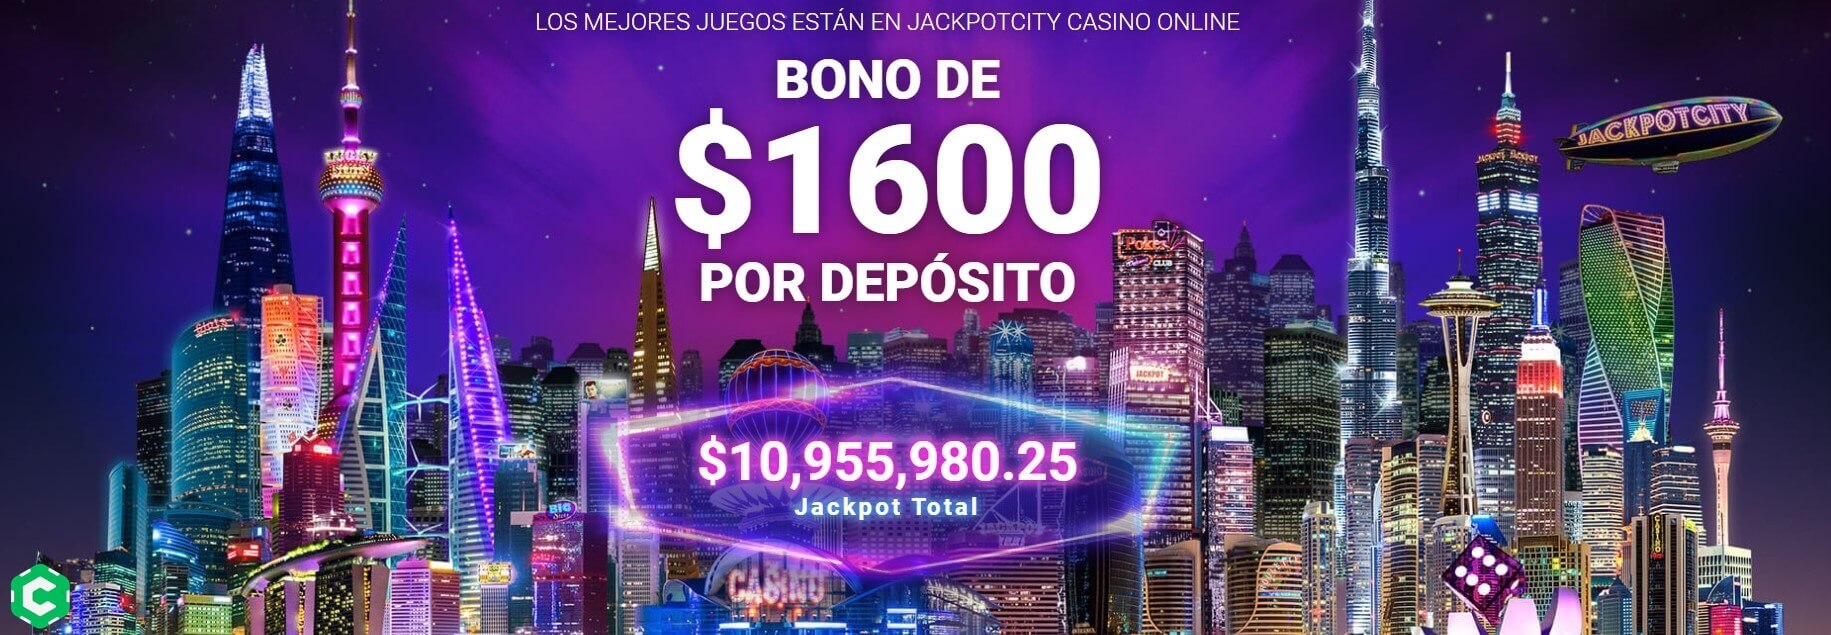 Bono de Bienvenida en JackpotCity Casino